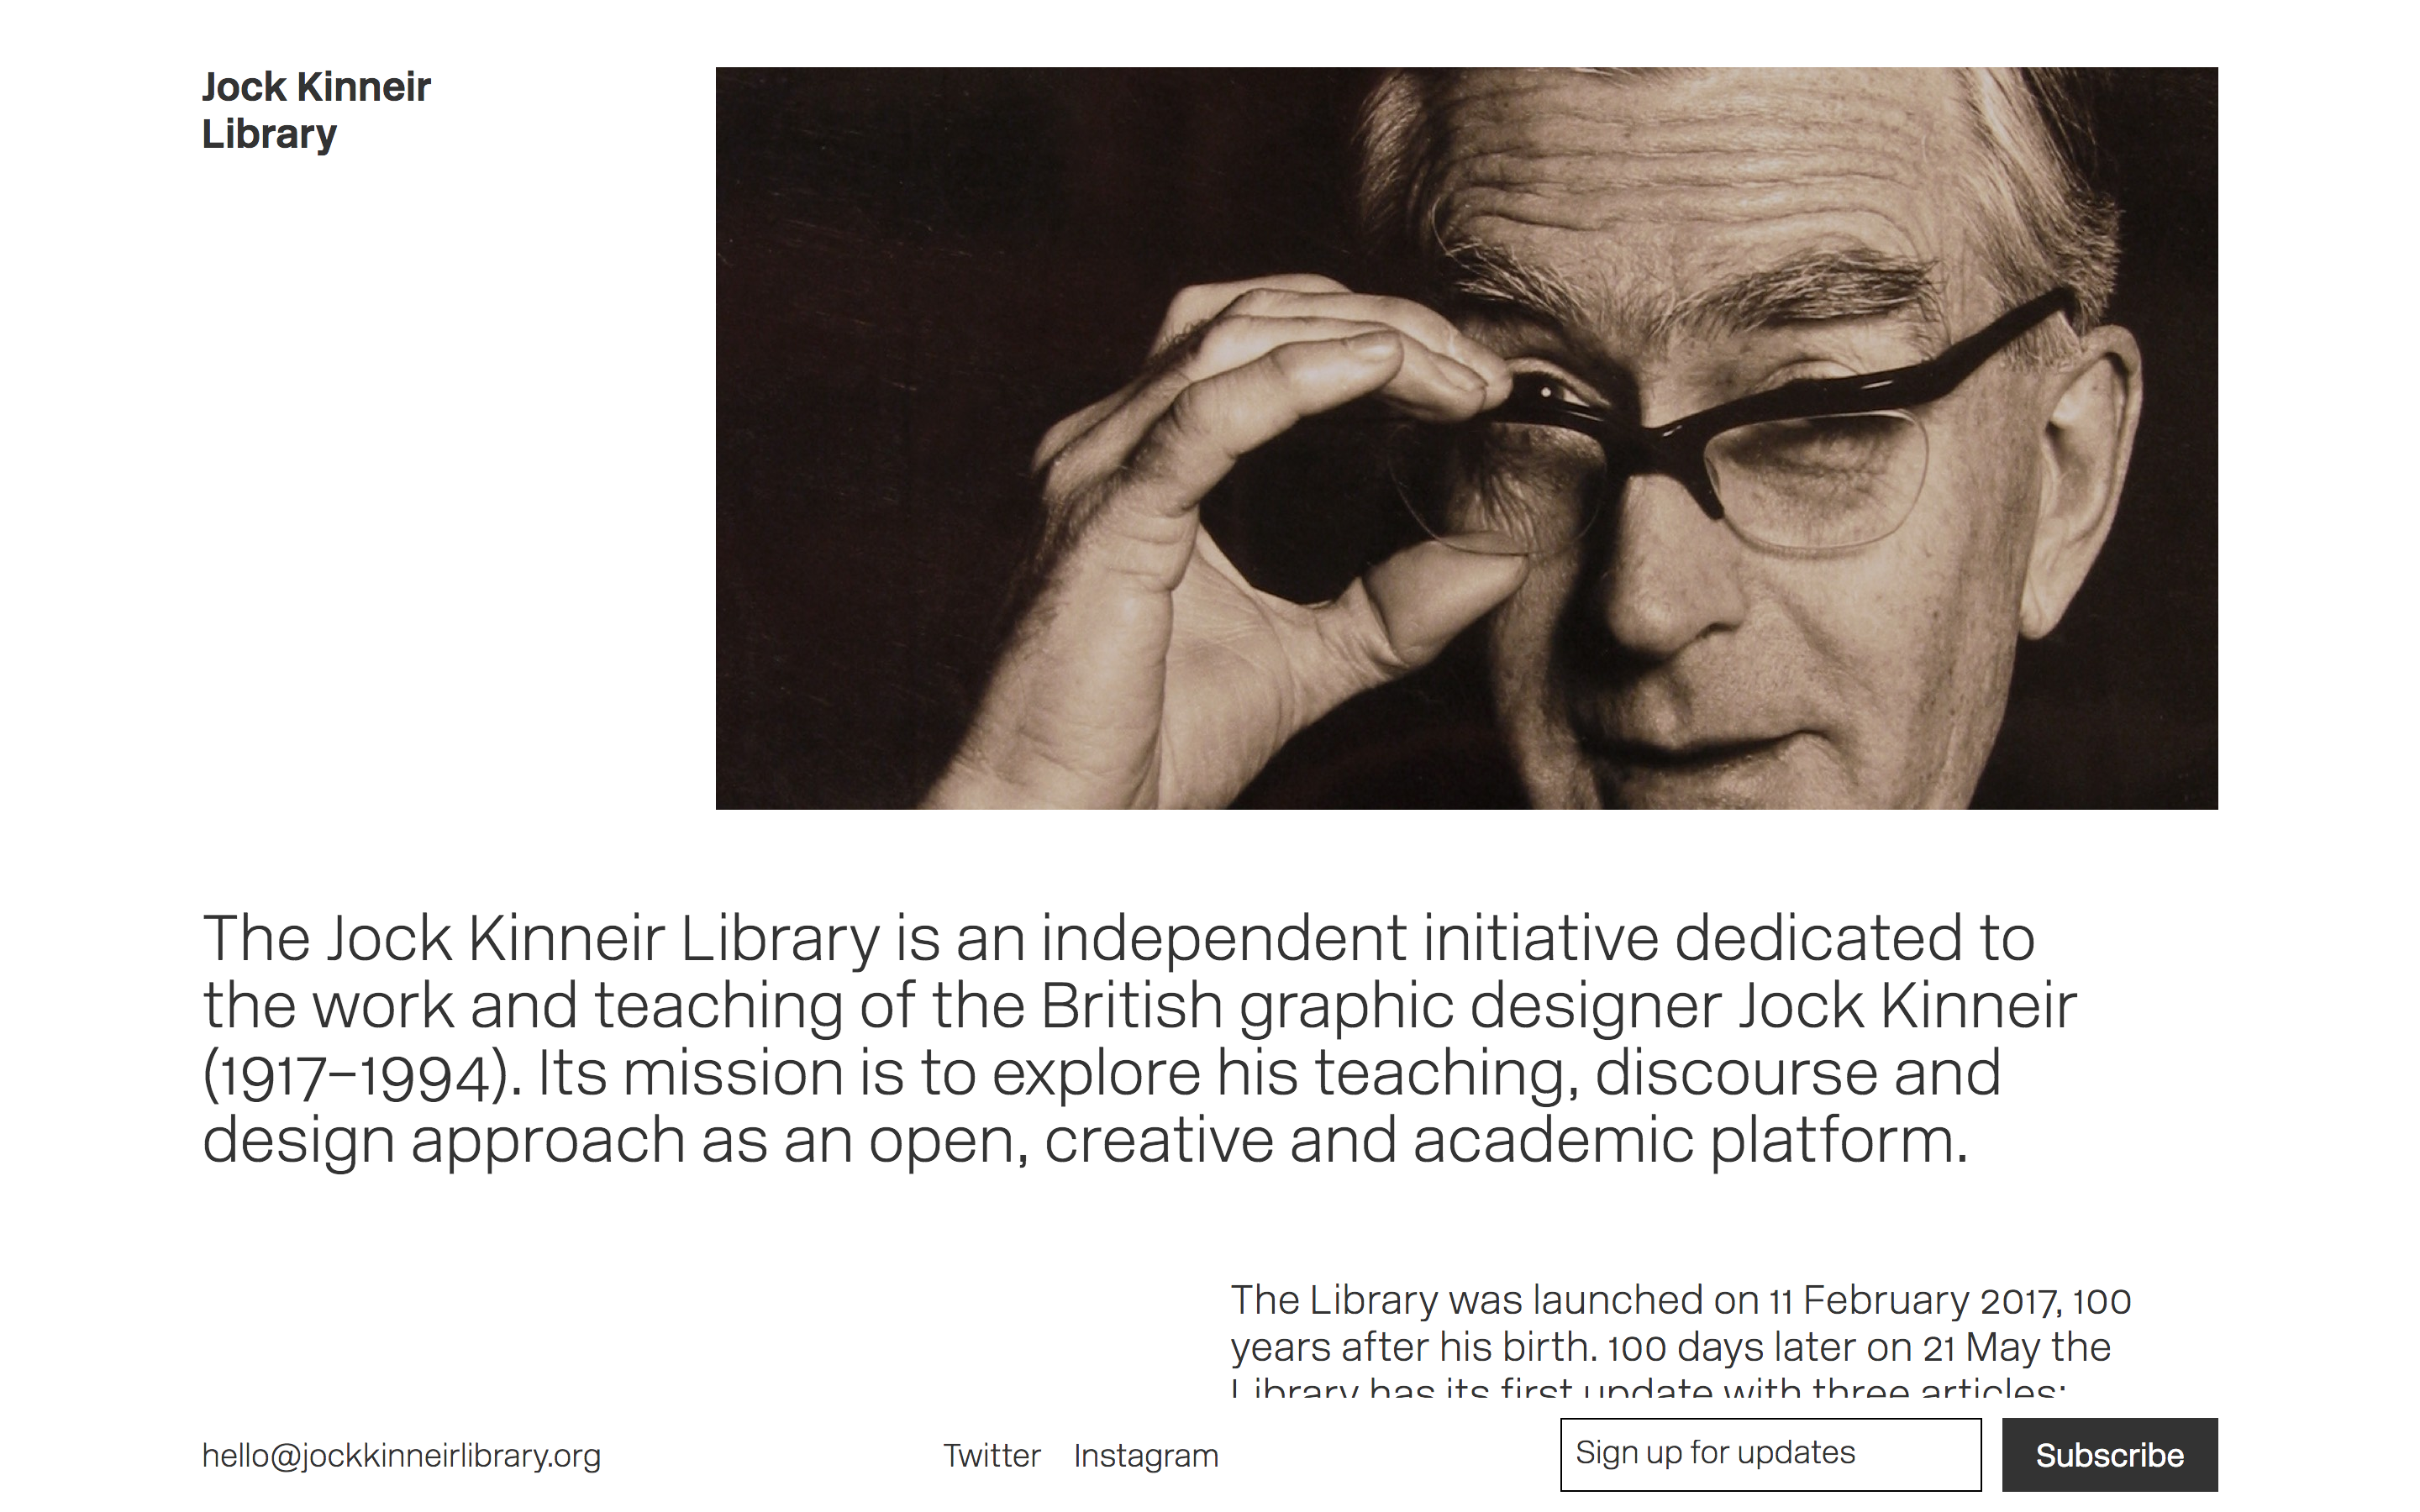 Jock Kinneir Library website homepage